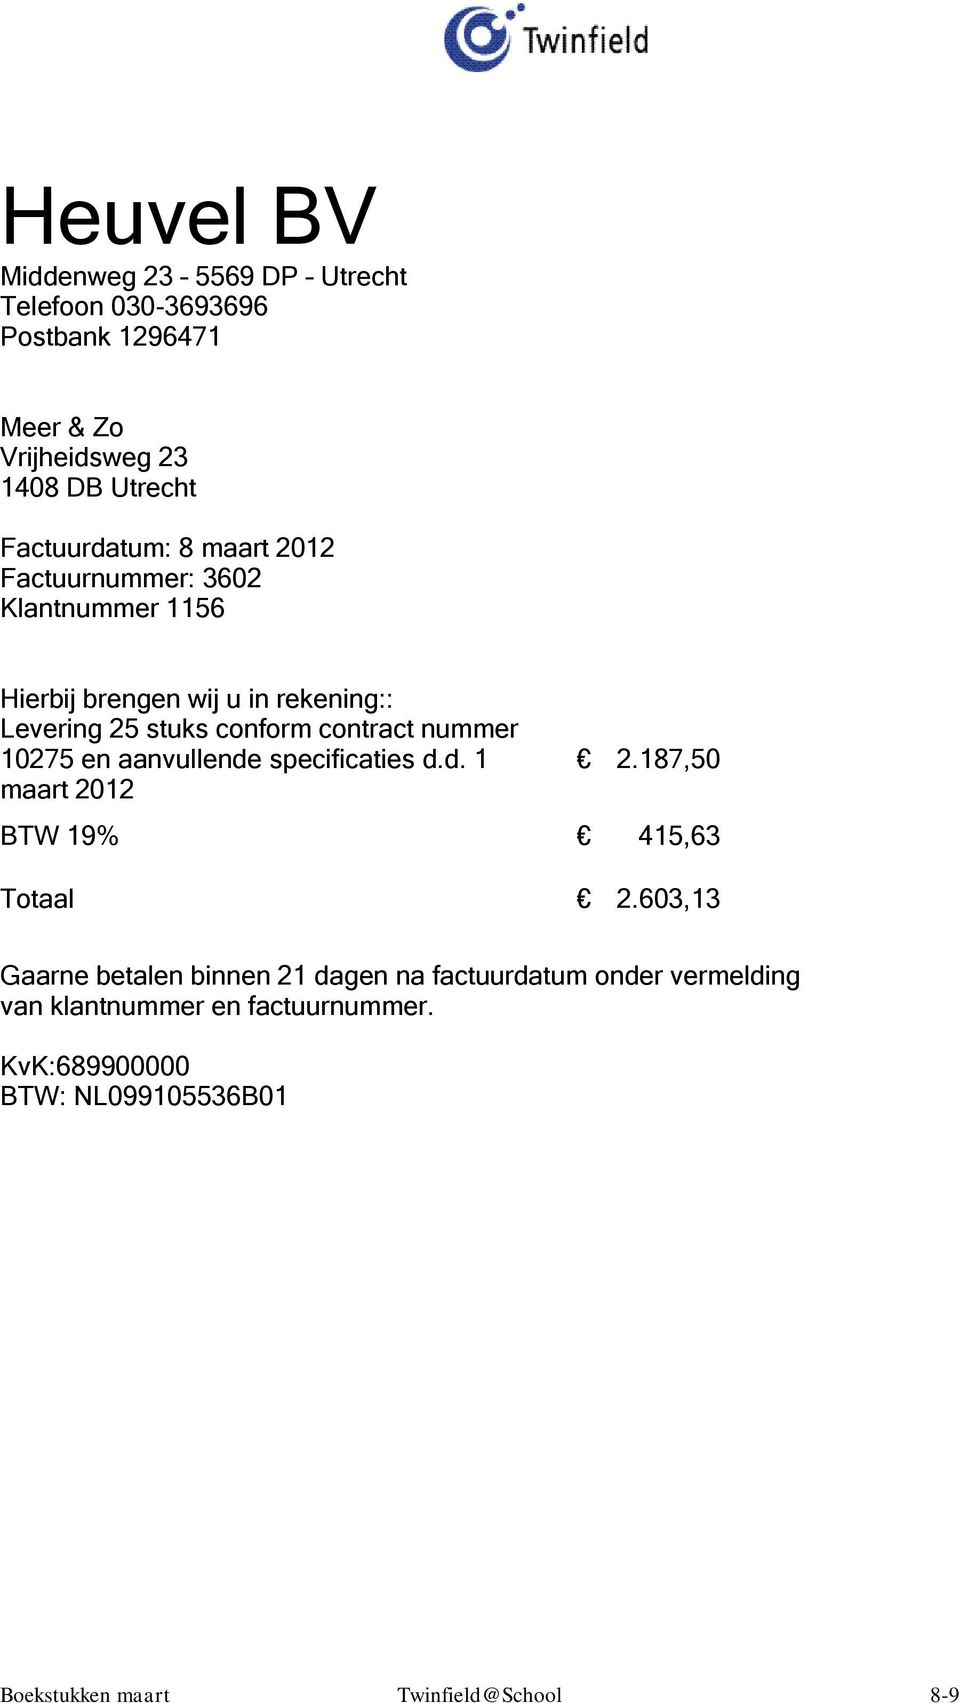 en aanvullende specificaties d.d. 1 maart 2012 2.187,50 BTW 19% 415,63 Totaal 2.